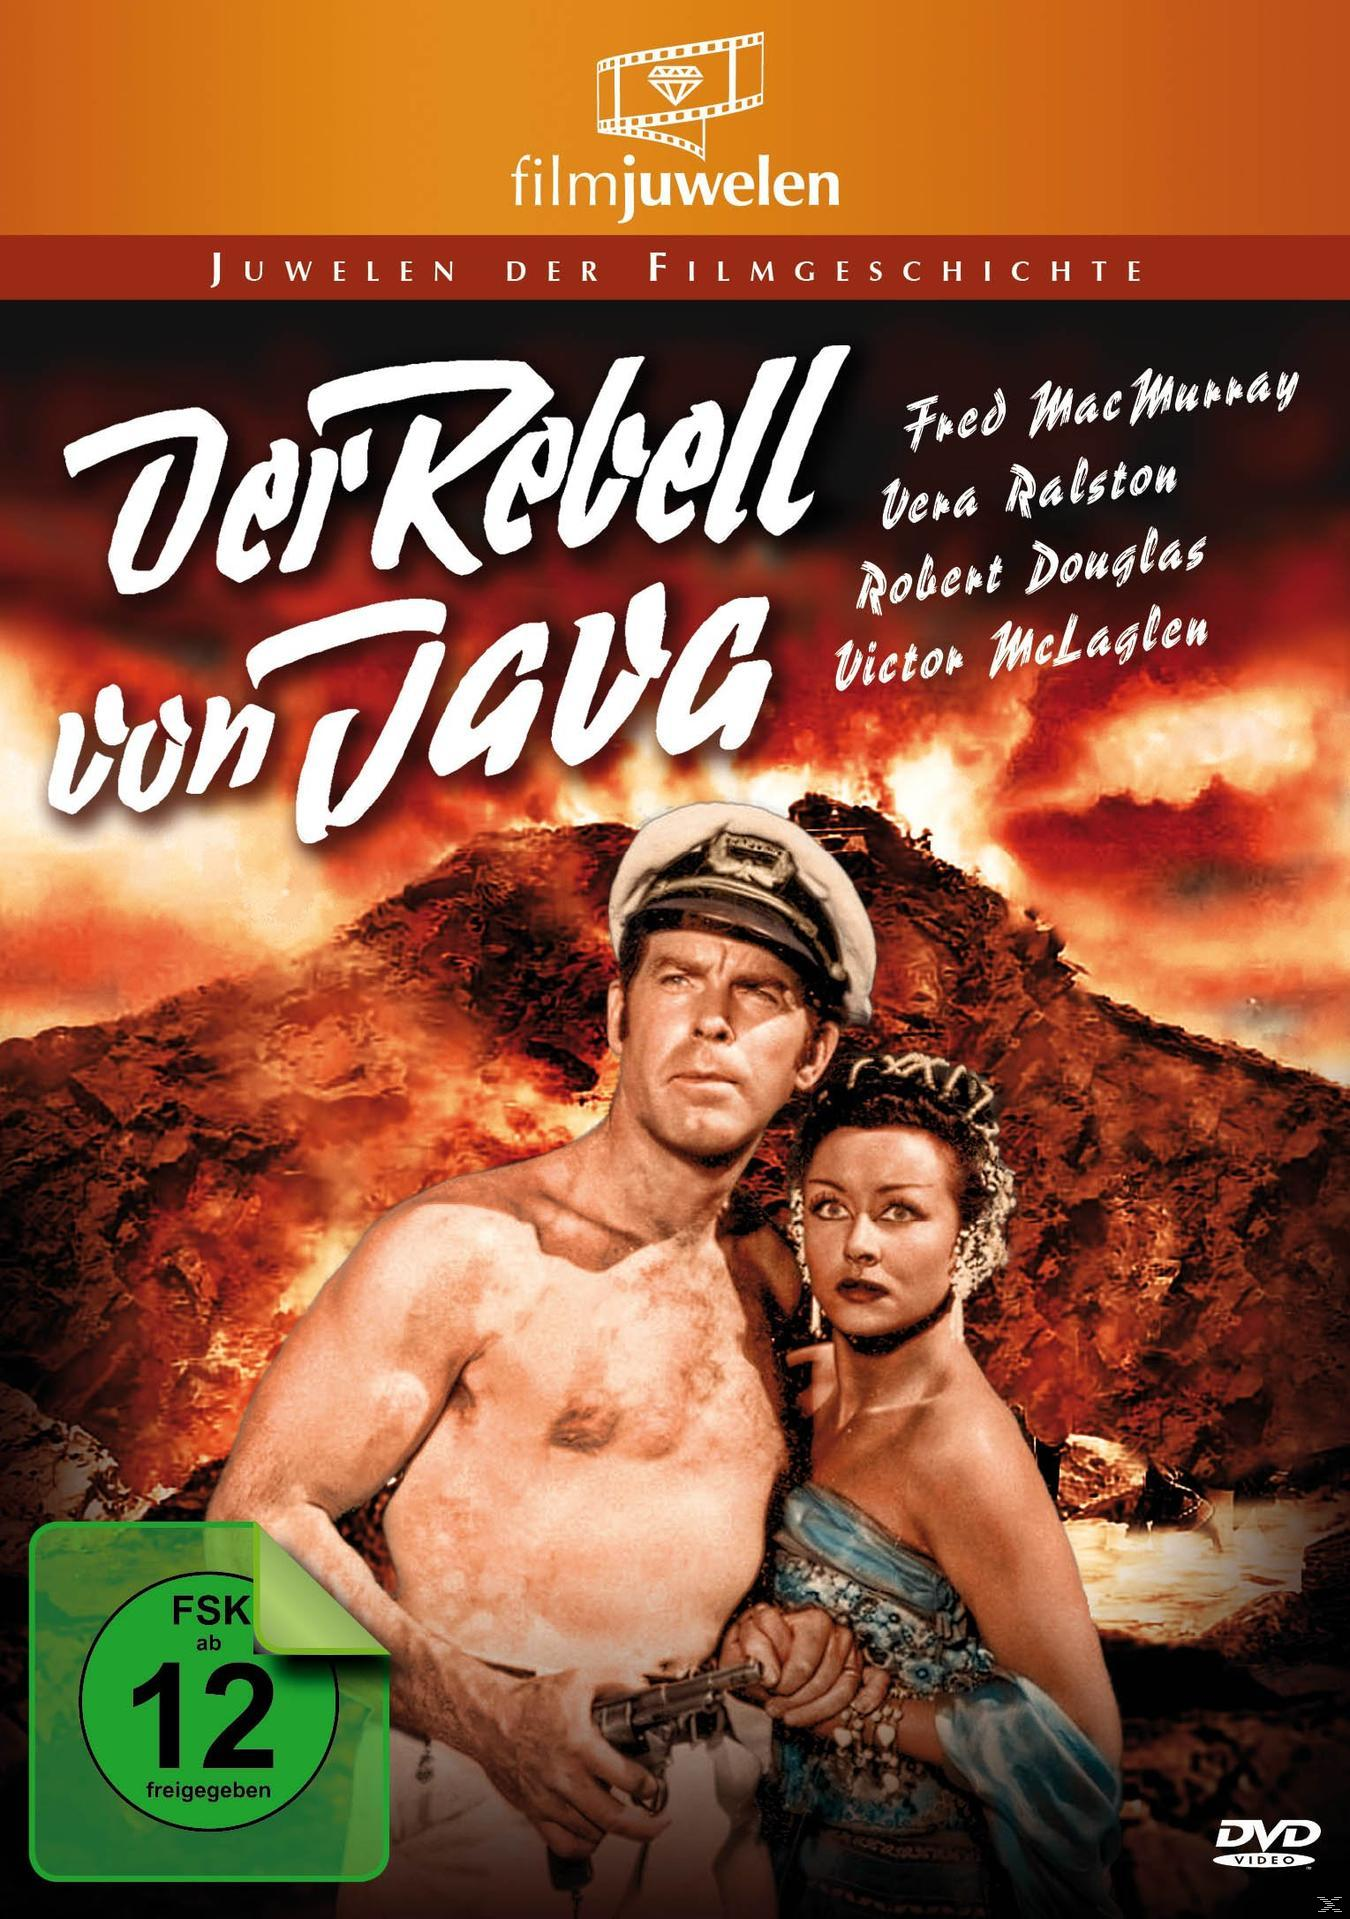 Von Java DVD Der Rebell